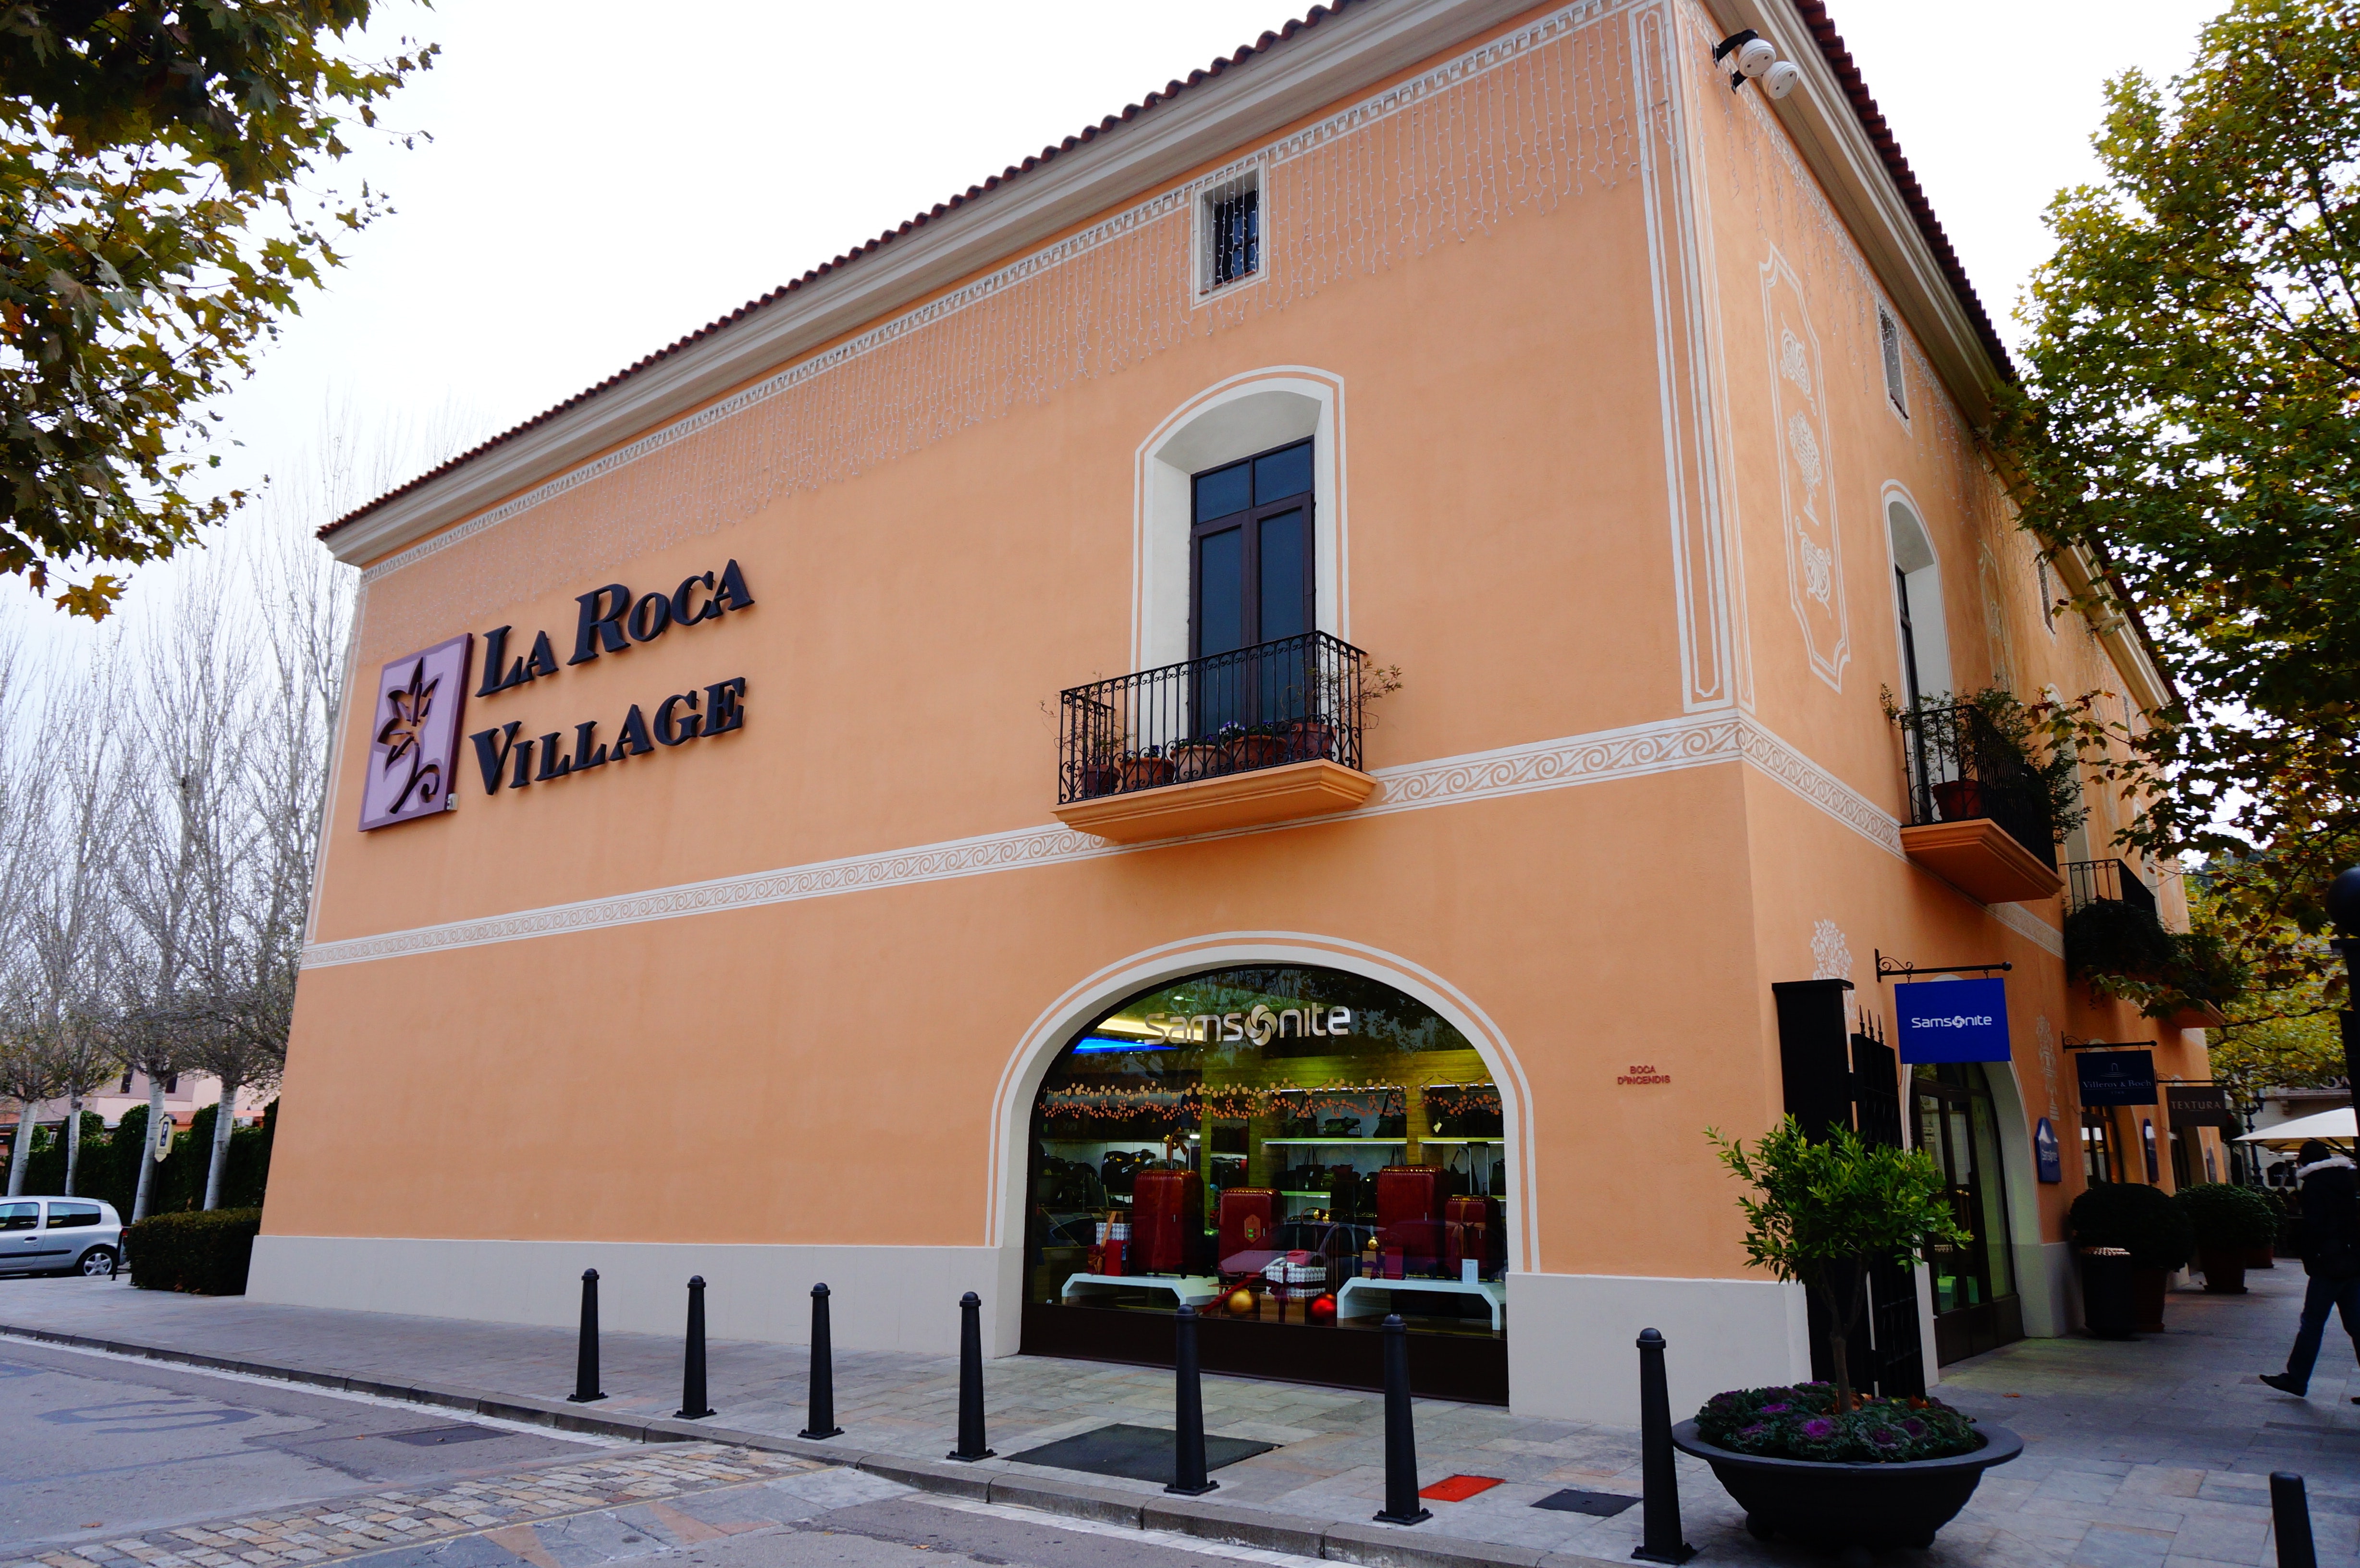 La Roca Village, Outlet in Barcelona, Designer Outlet